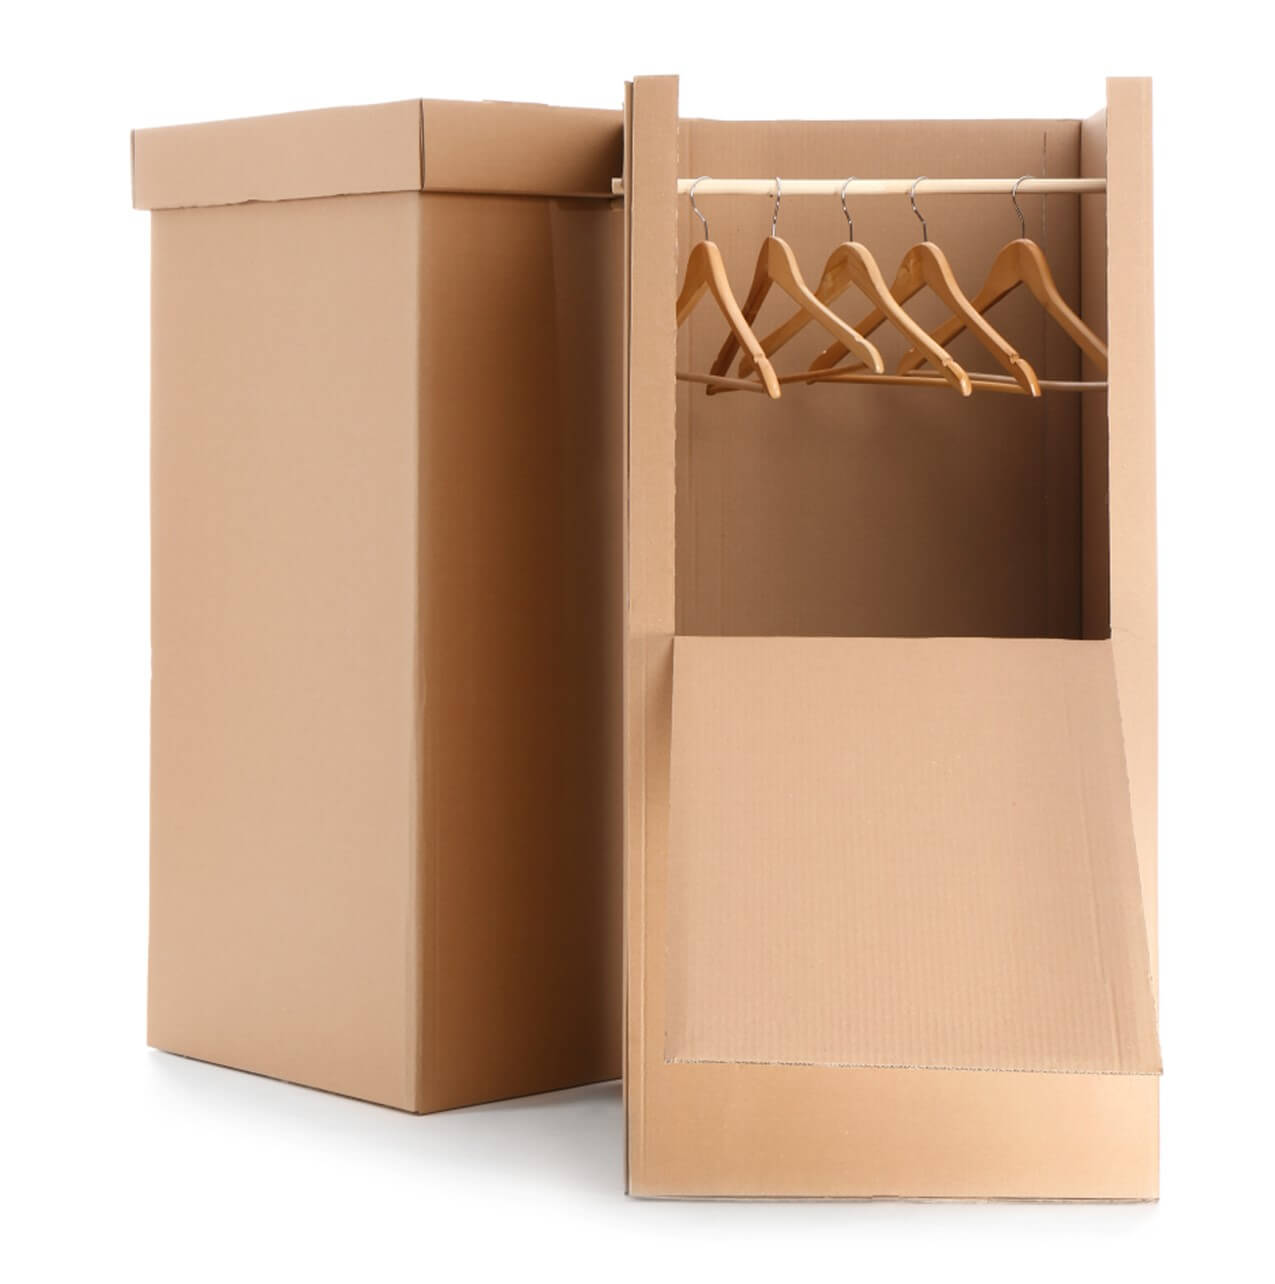 An image of a wardrobe carton box.